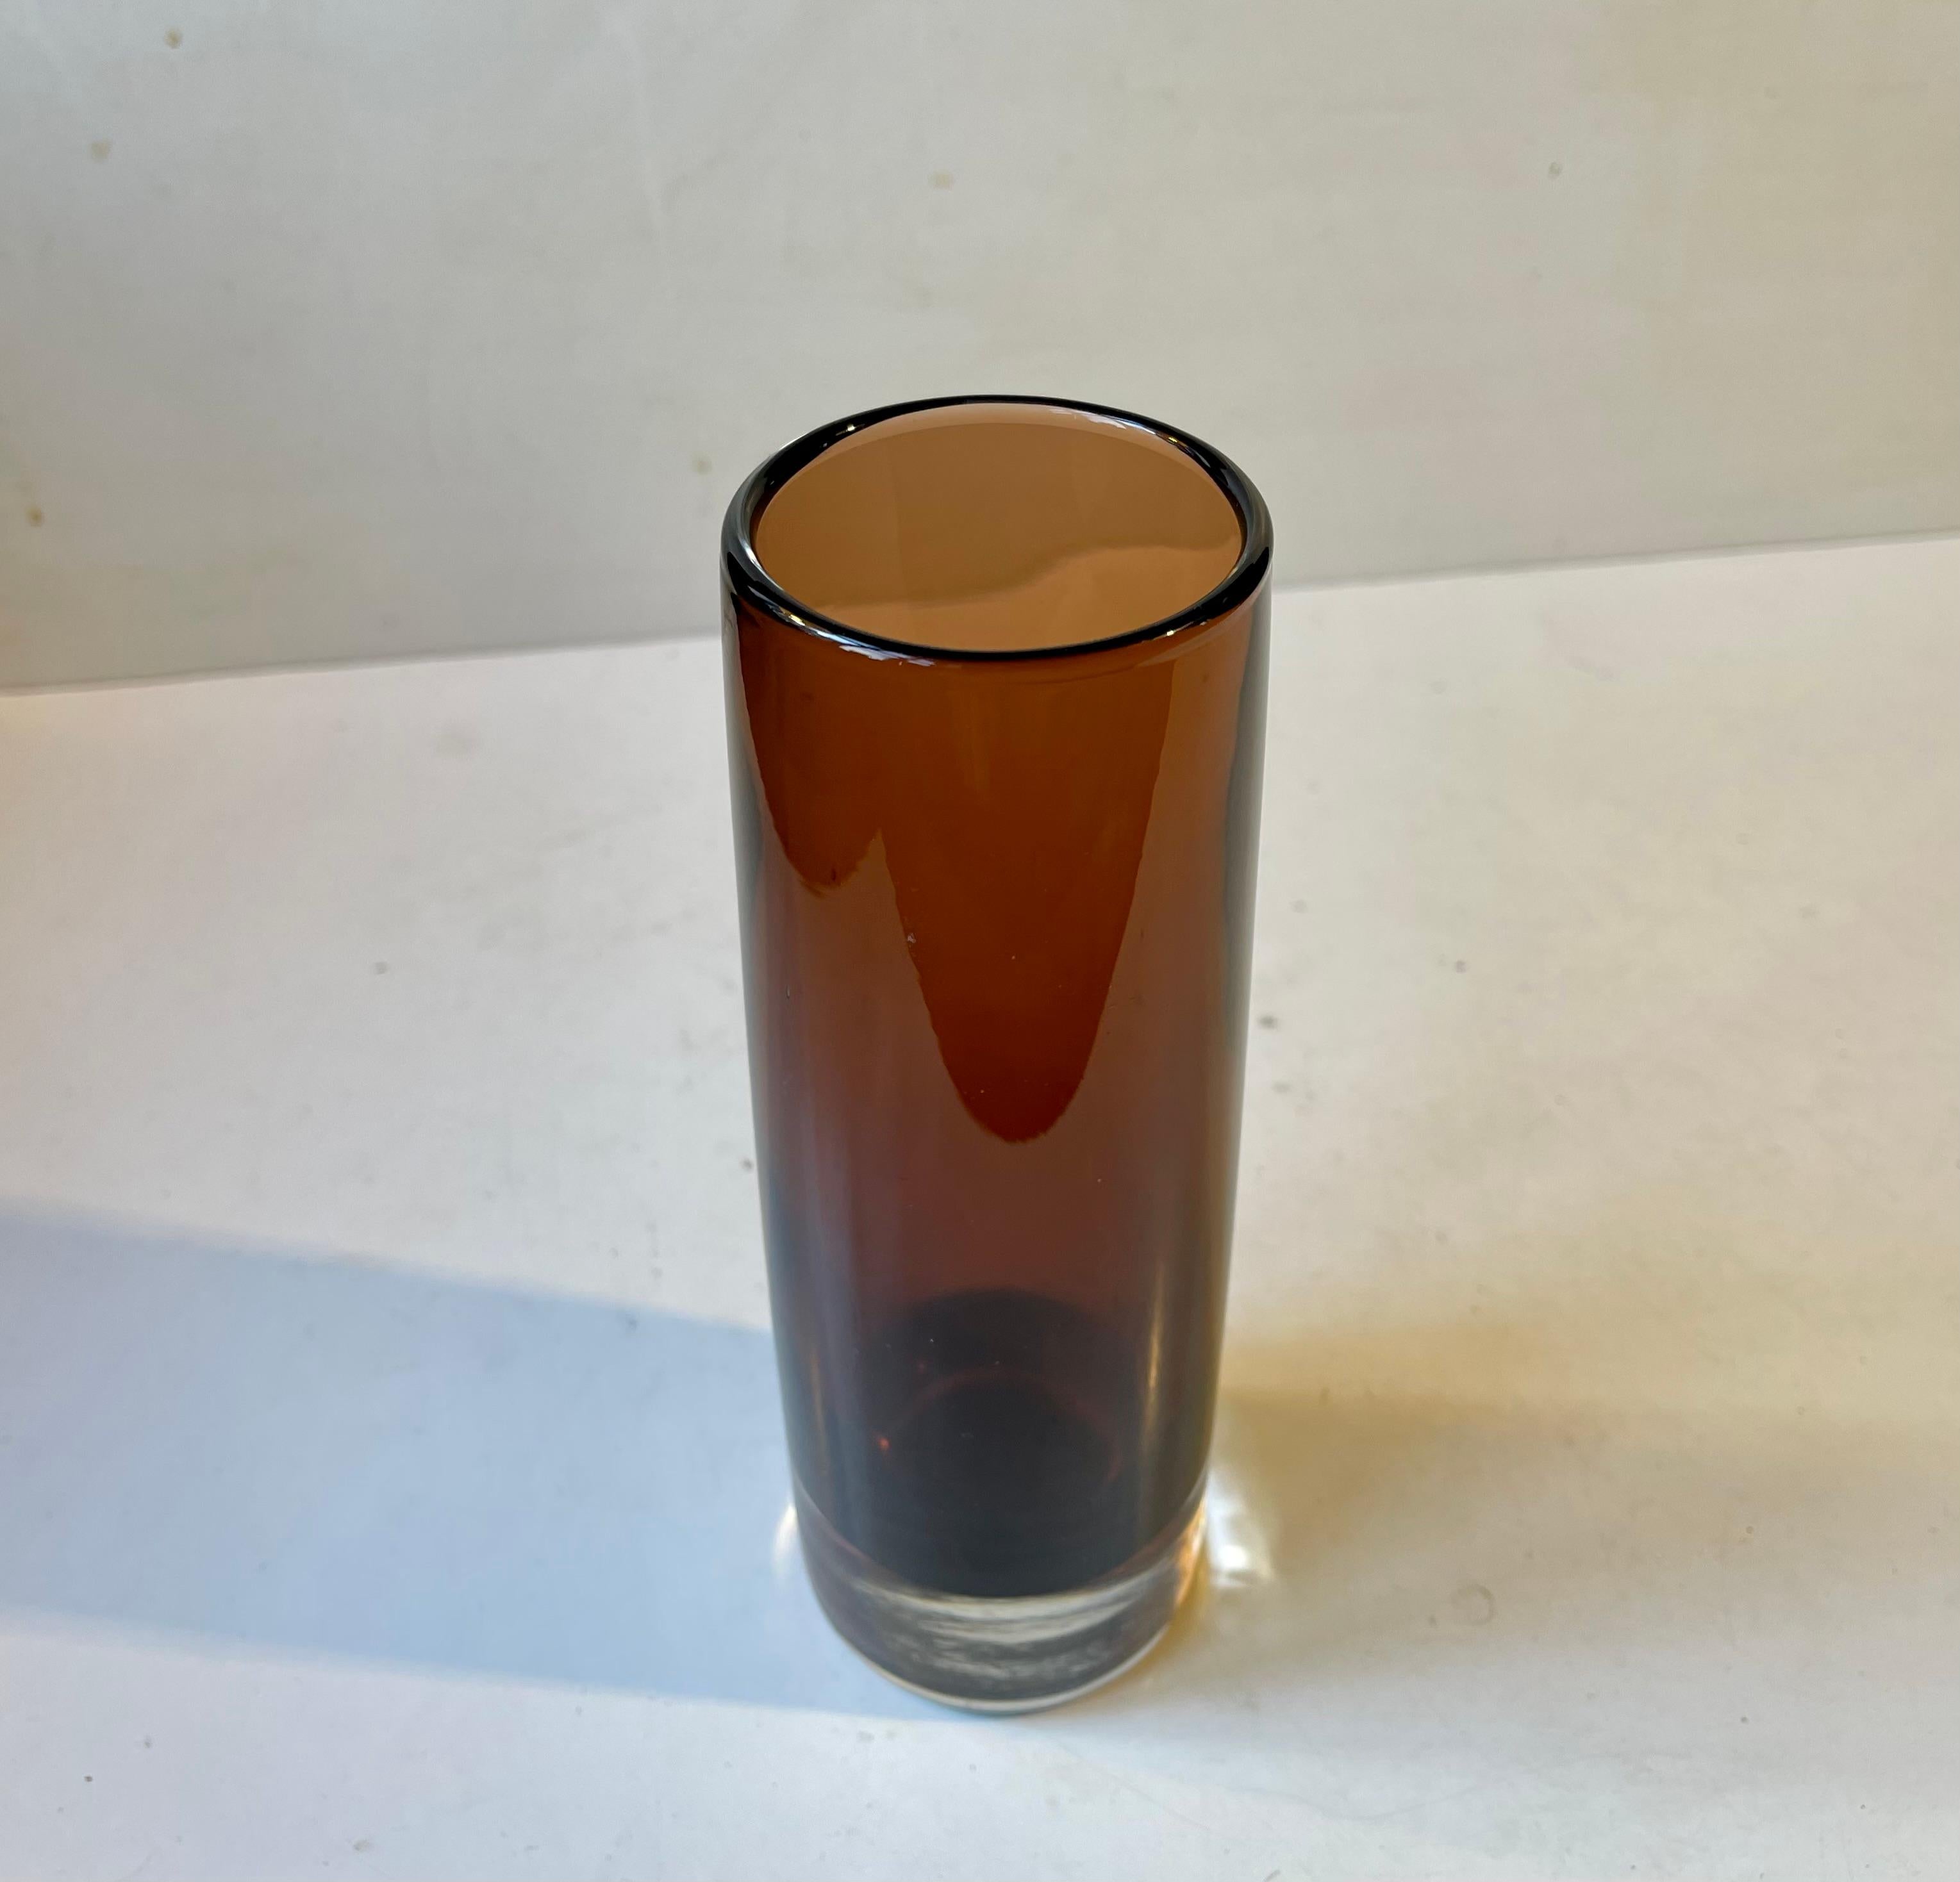 Zylindrische, kaffeebraune, sich verjüngende Glasvase, die Tamara Aladin zugeschrieben wird. Hergestellt von Riihimaen Lasi in Finnland, ca. 1970-75. Abmessungen: H: 21 cm, Durchmesser: 6,8 cm.